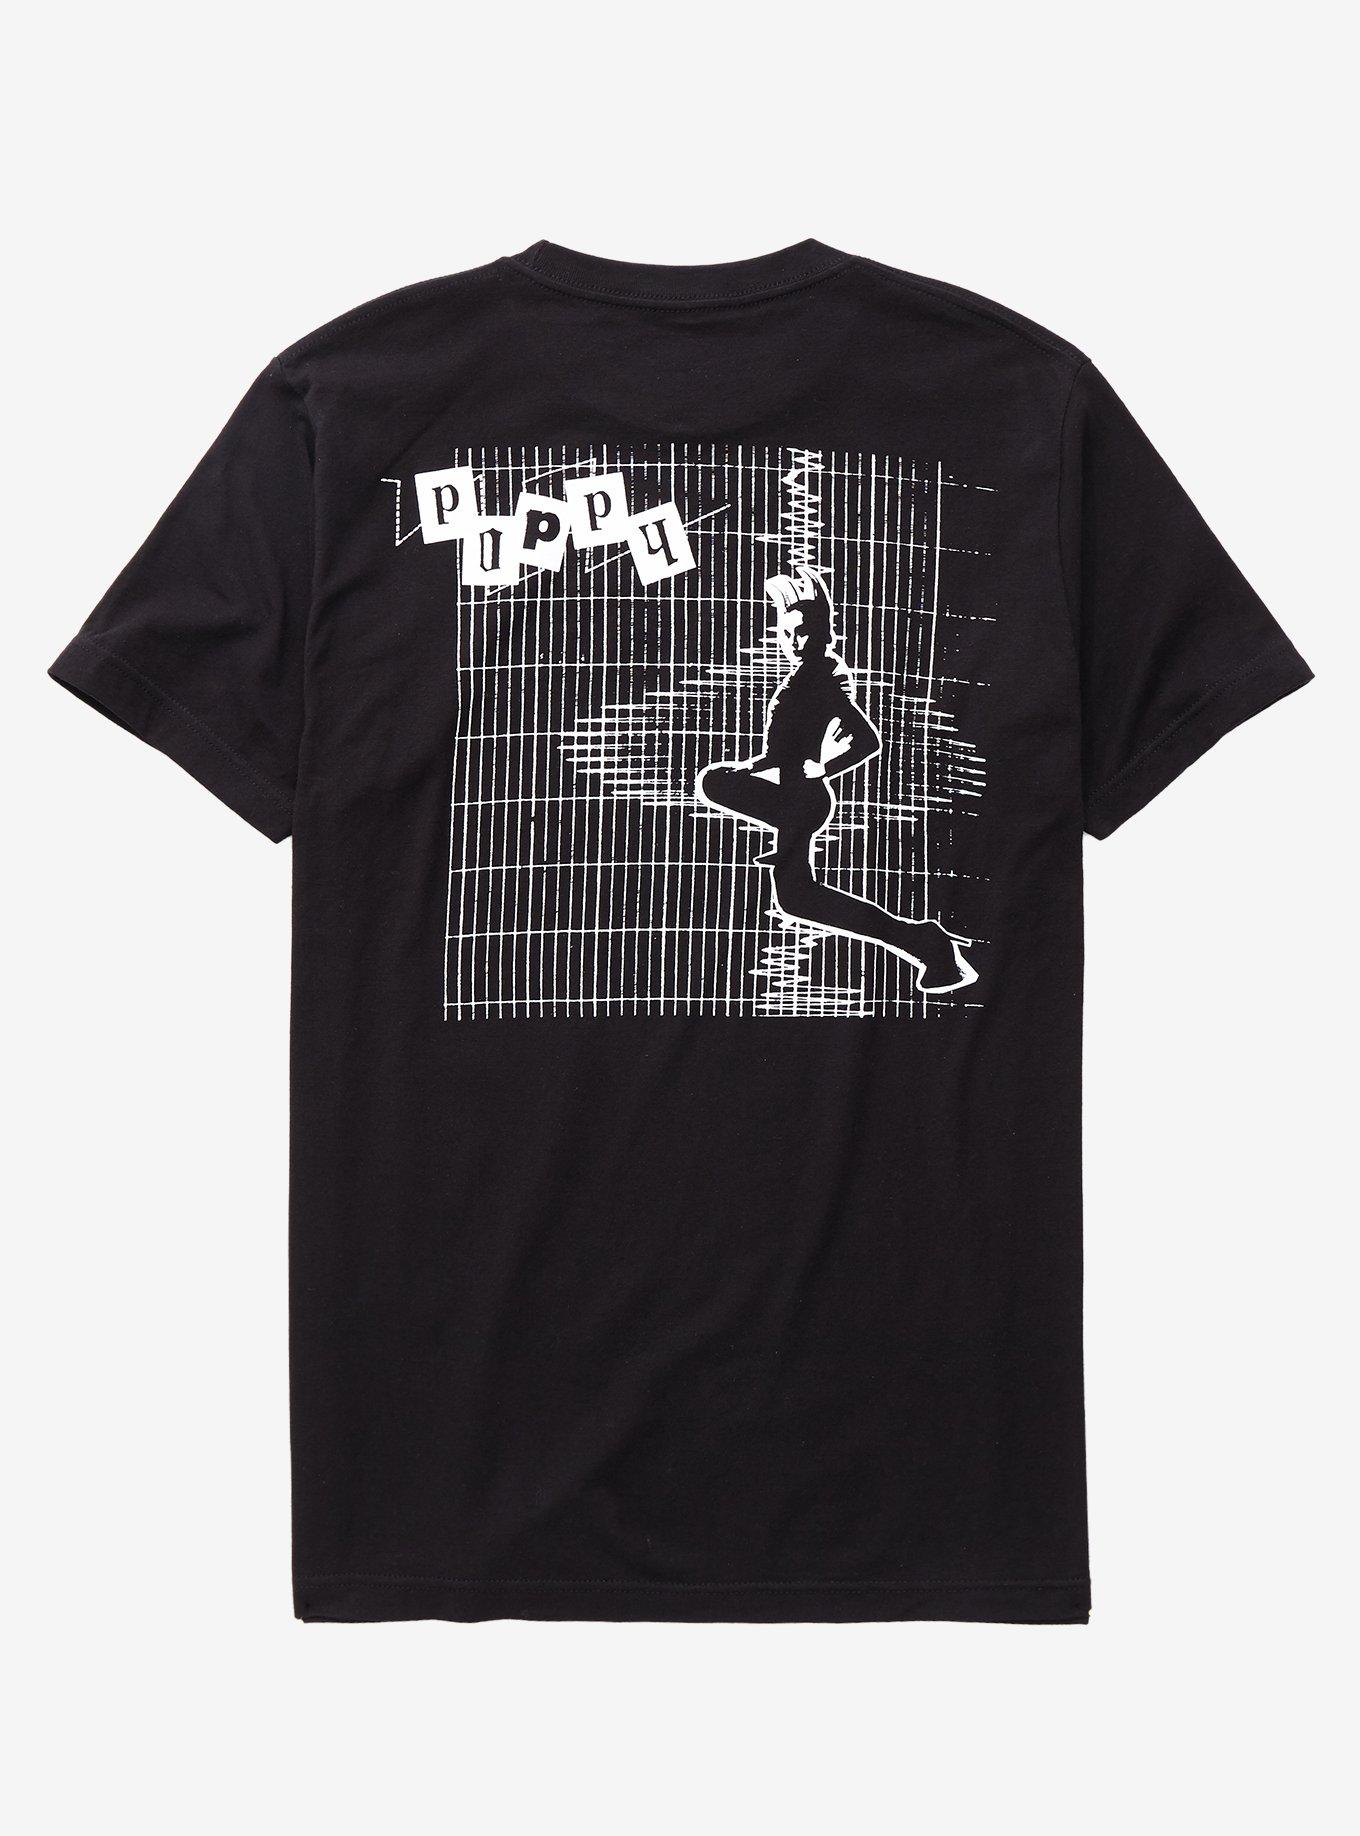 Poppy Flux Album T-Shirt, BLACK, alternate